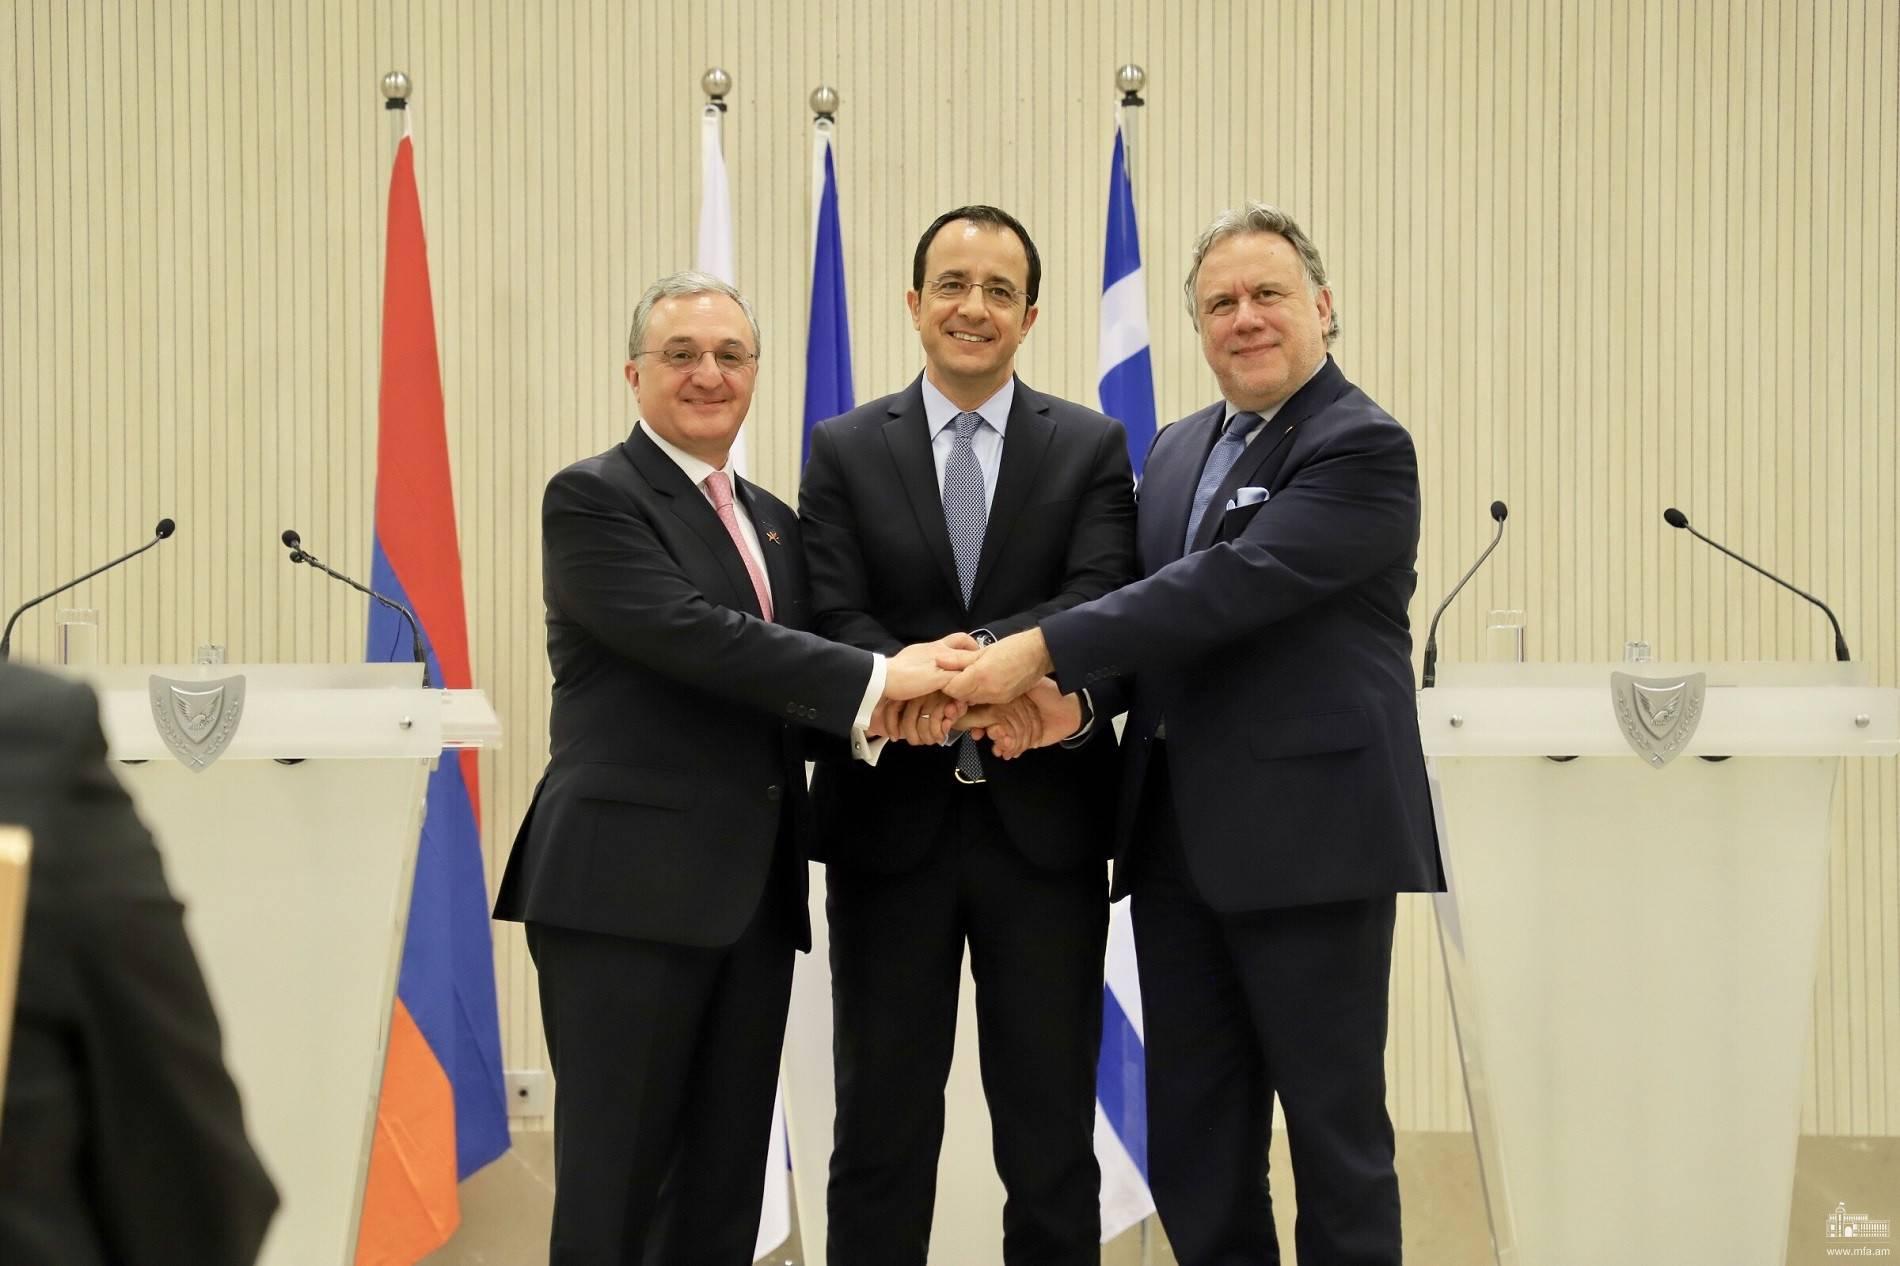 Հայաստան-Հունաստան-Կիպրոս եռակողմ ձևաչափով առաջին հանդիպումը՝ Հայաստանում